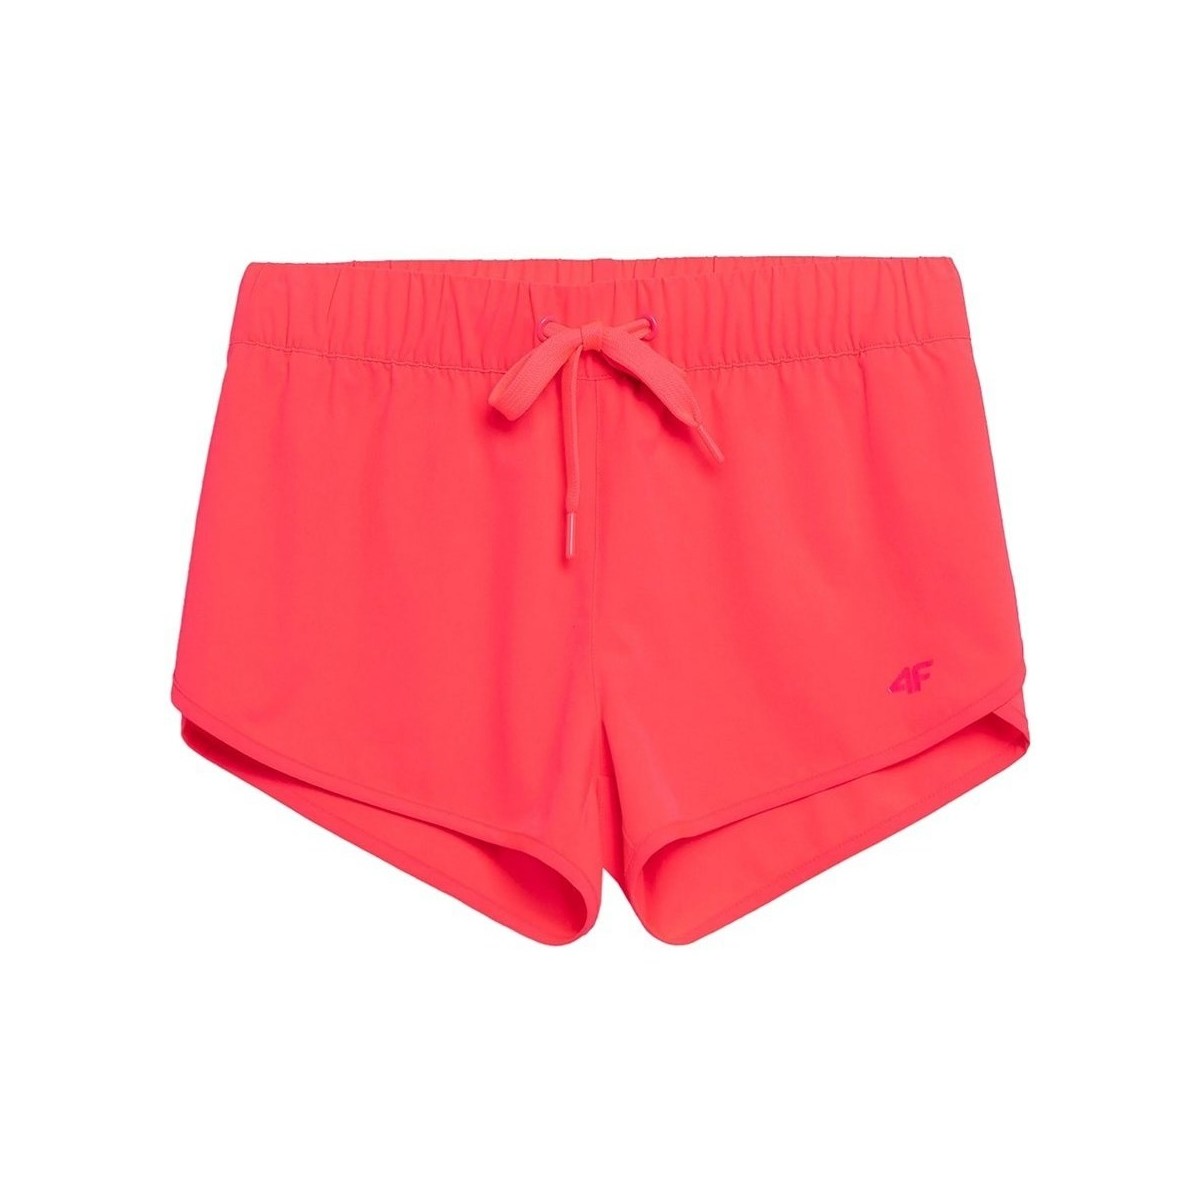 Textil Ženy Tříčtvrteční kalhoty 4F SKDT003 Růžová